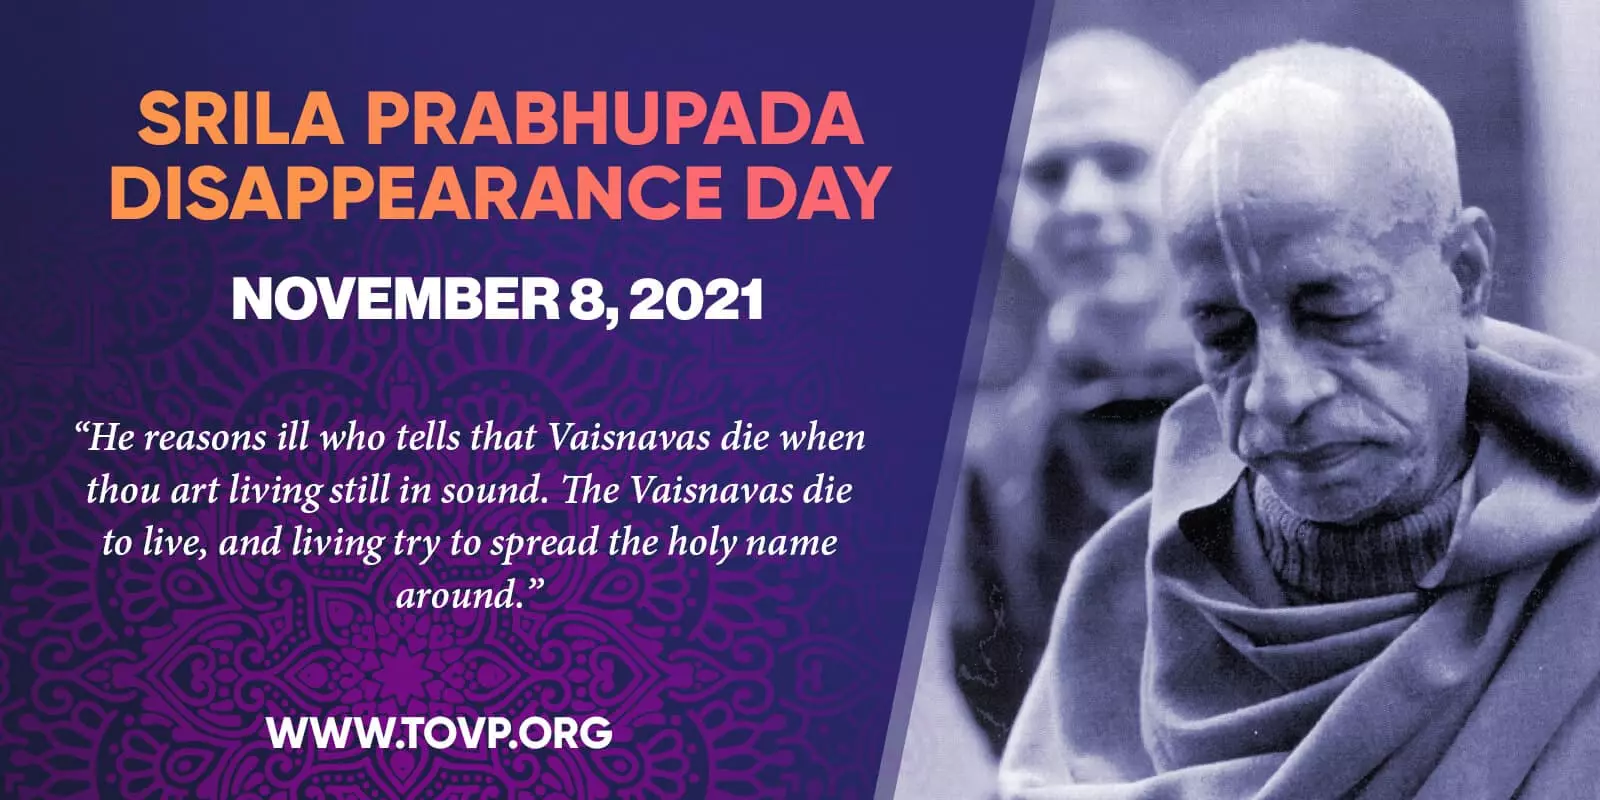 O Dia do Desaparecimento de Srila Prabhupada e #039; e o TOVP